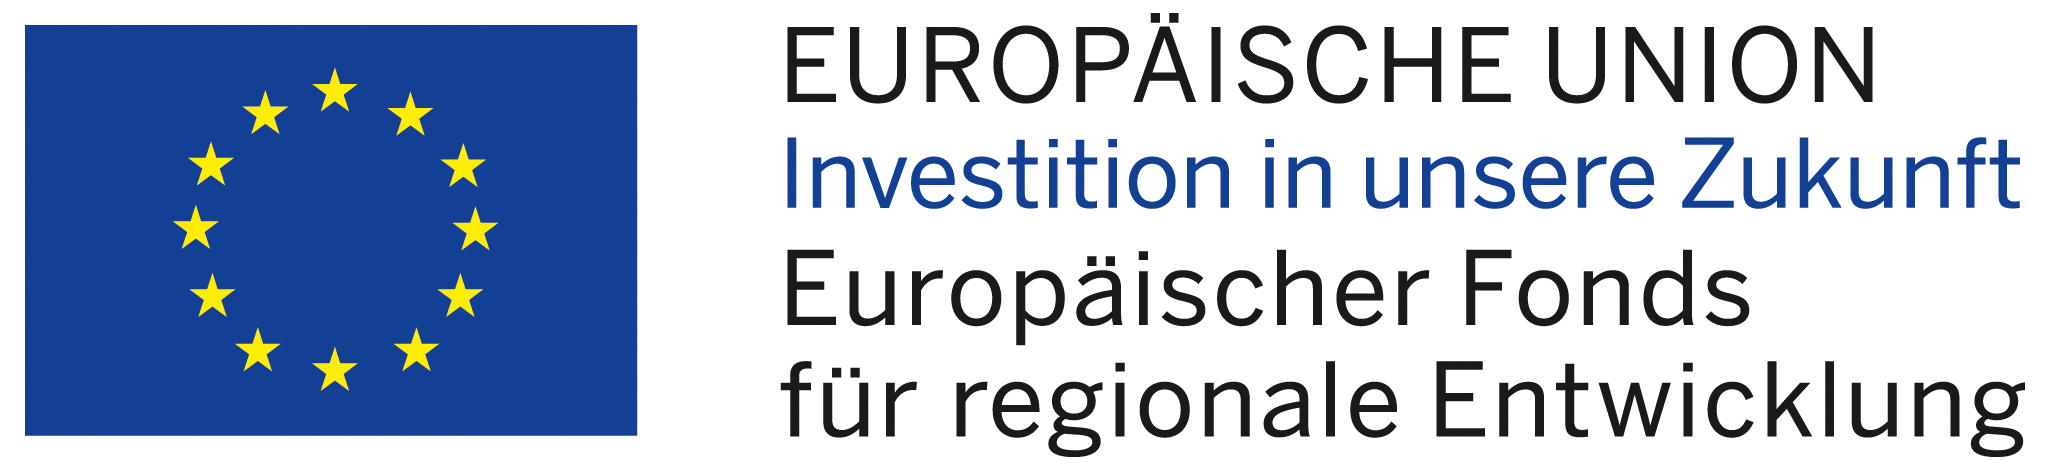 EUROPÄISCHE UNION Investition in unsere Zukunft / Europätischer Fonds für regionale Entwicklung